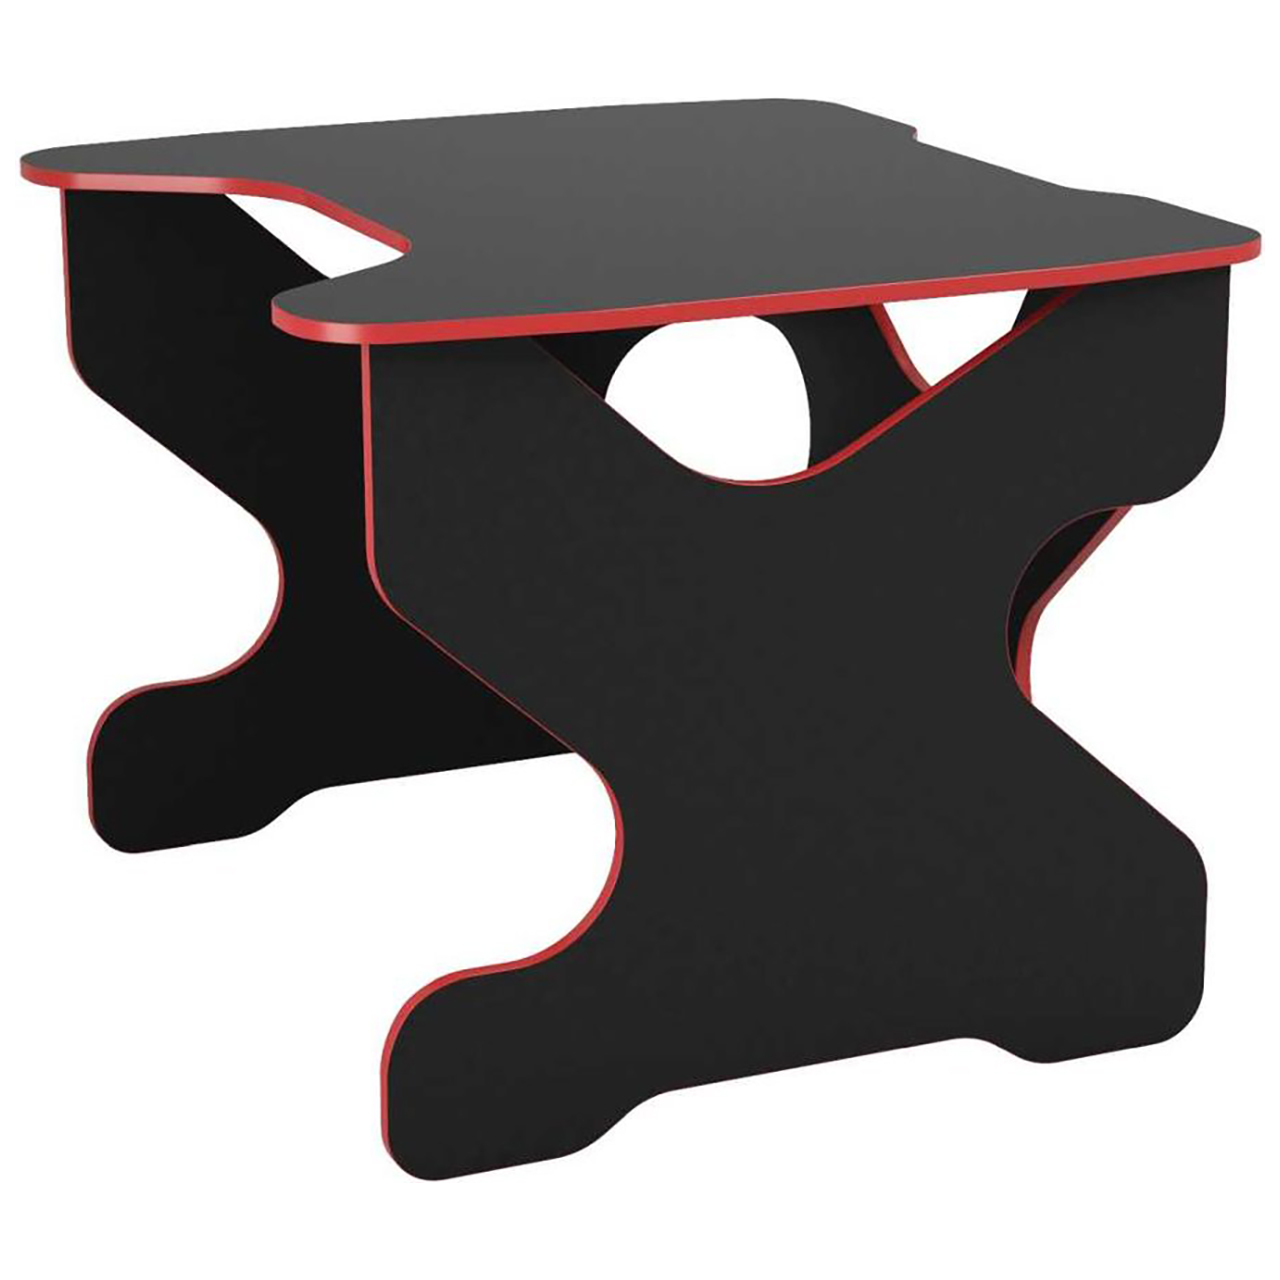 Компьютерный стол Ивент Красный/Черный